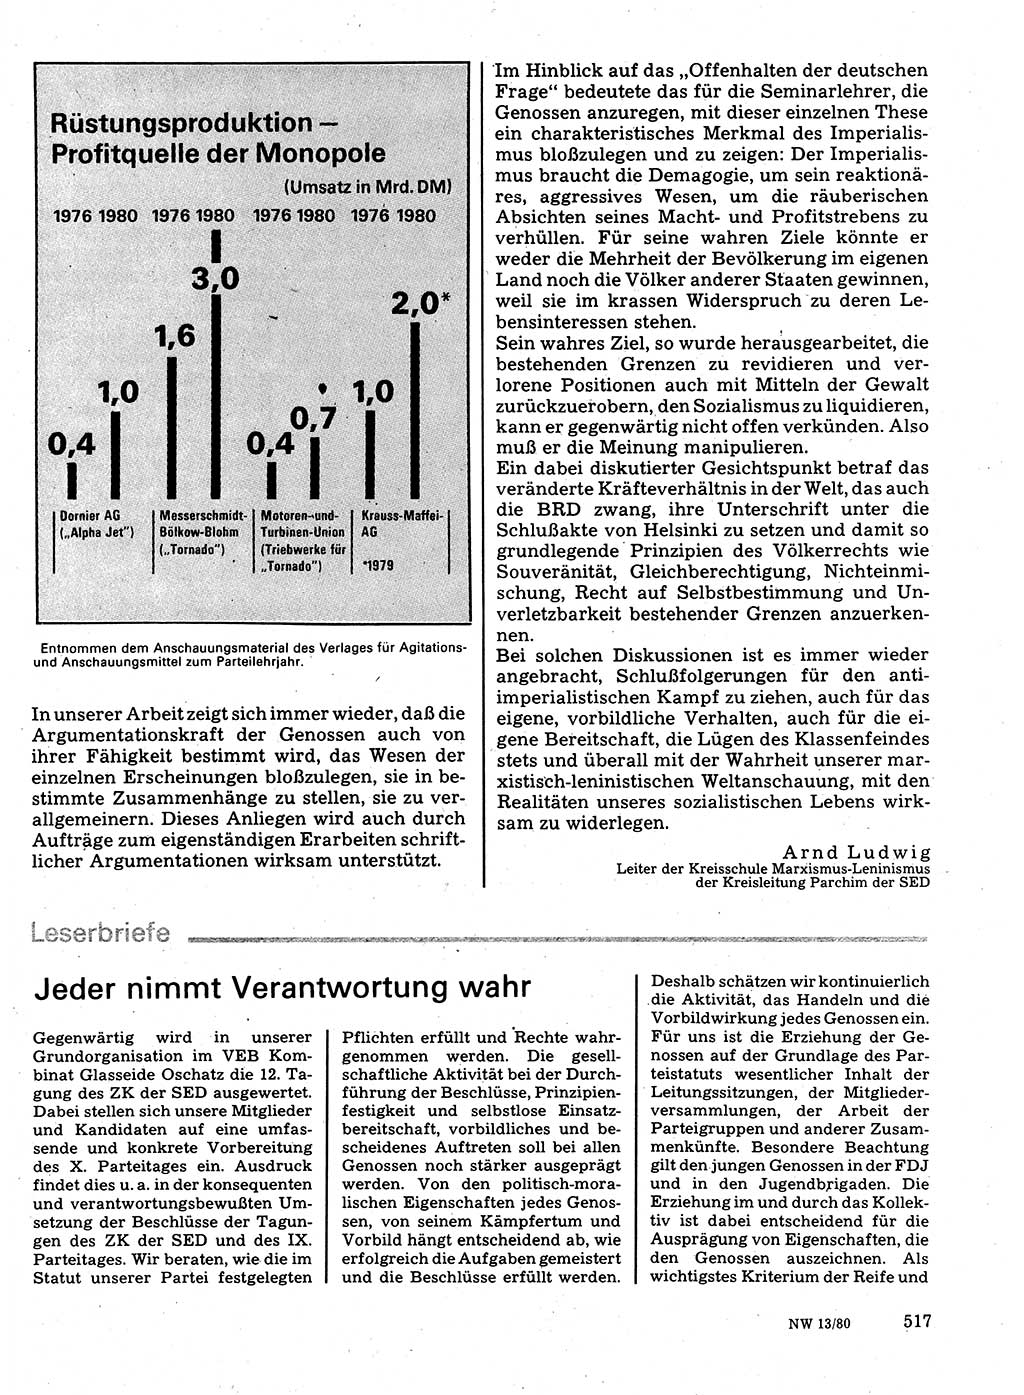 Neuer Weg (NW), Organ des Zentralkomitees (ZK) der SED (Sozialistische Einheitspartei Deutschlands) für Fragen des Parteilebens, 35. Jahrgang [Deutsche Demokratische Republik (DDR)] 1980, Seite 517 (NW ZK SED DDR 1980, S. 517)